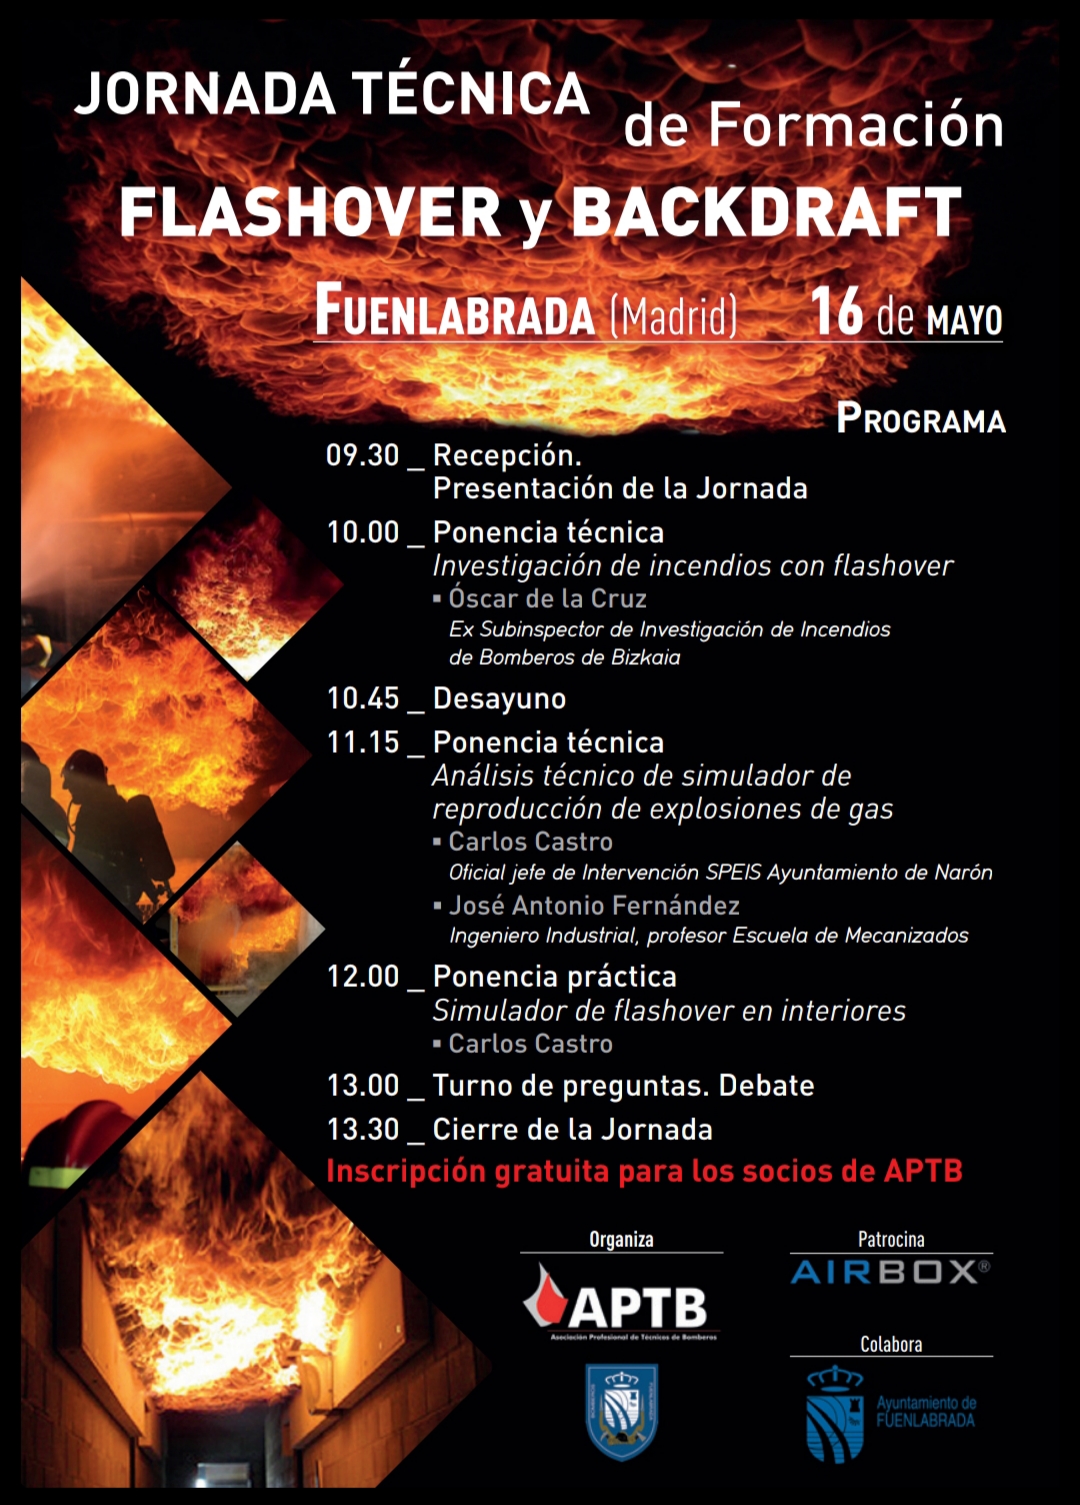 Jornada Técnica de #Formación de #APTB en Flashover y Backdraft: 16 de mayo en #Fuenlabrada